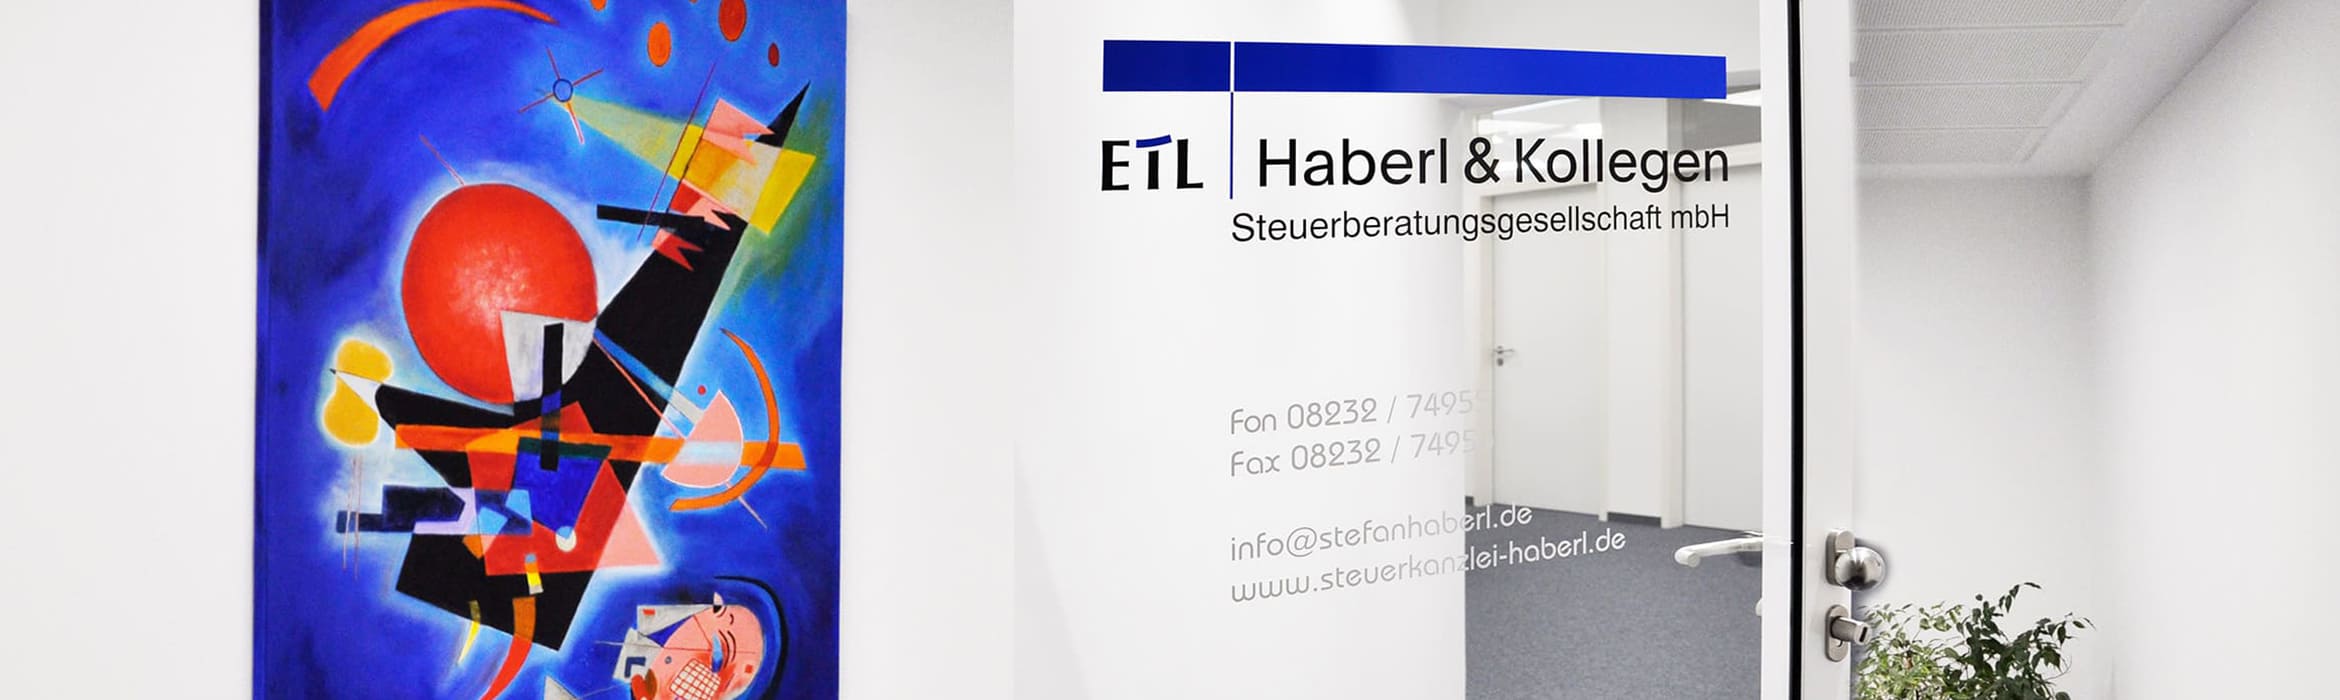 Steuerkanzlei ETL Haberl und Kollegen